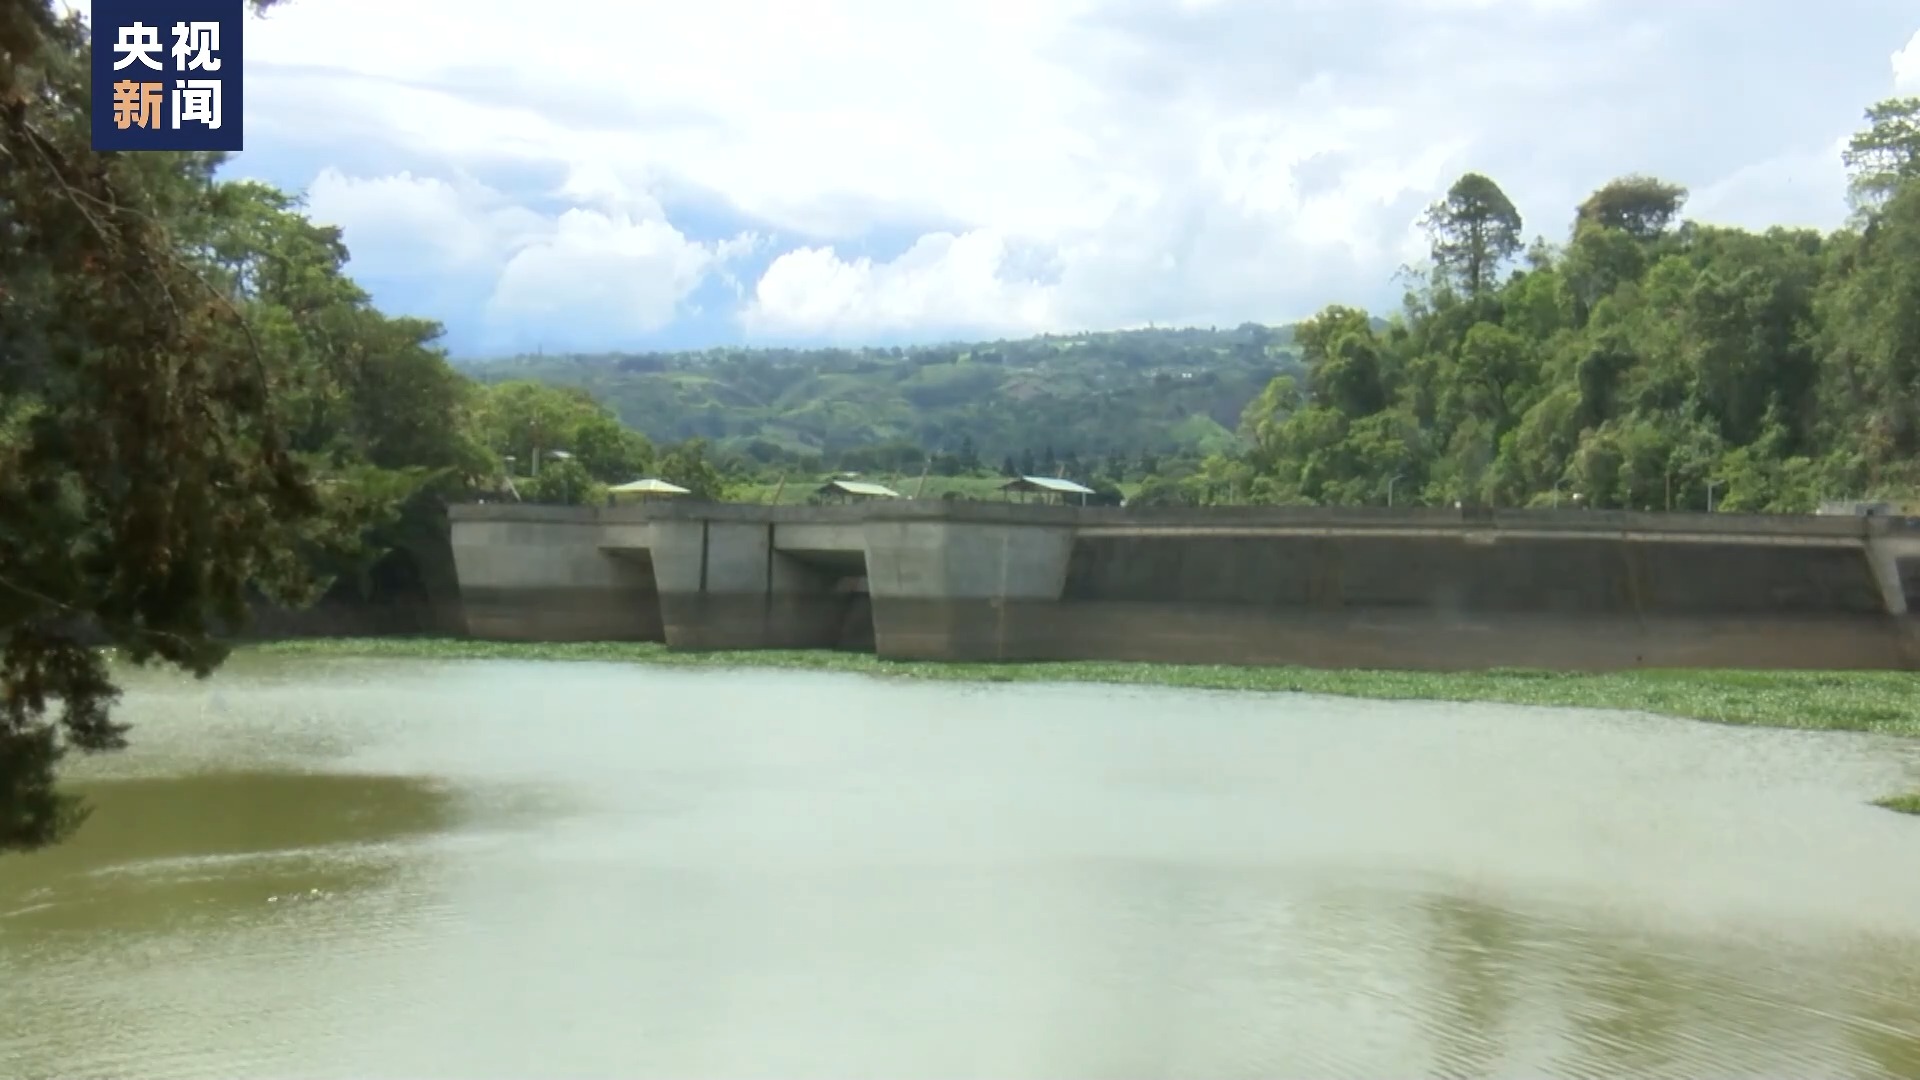 哥斯达黎加严重干旱 清洁可再生能源发展受挫